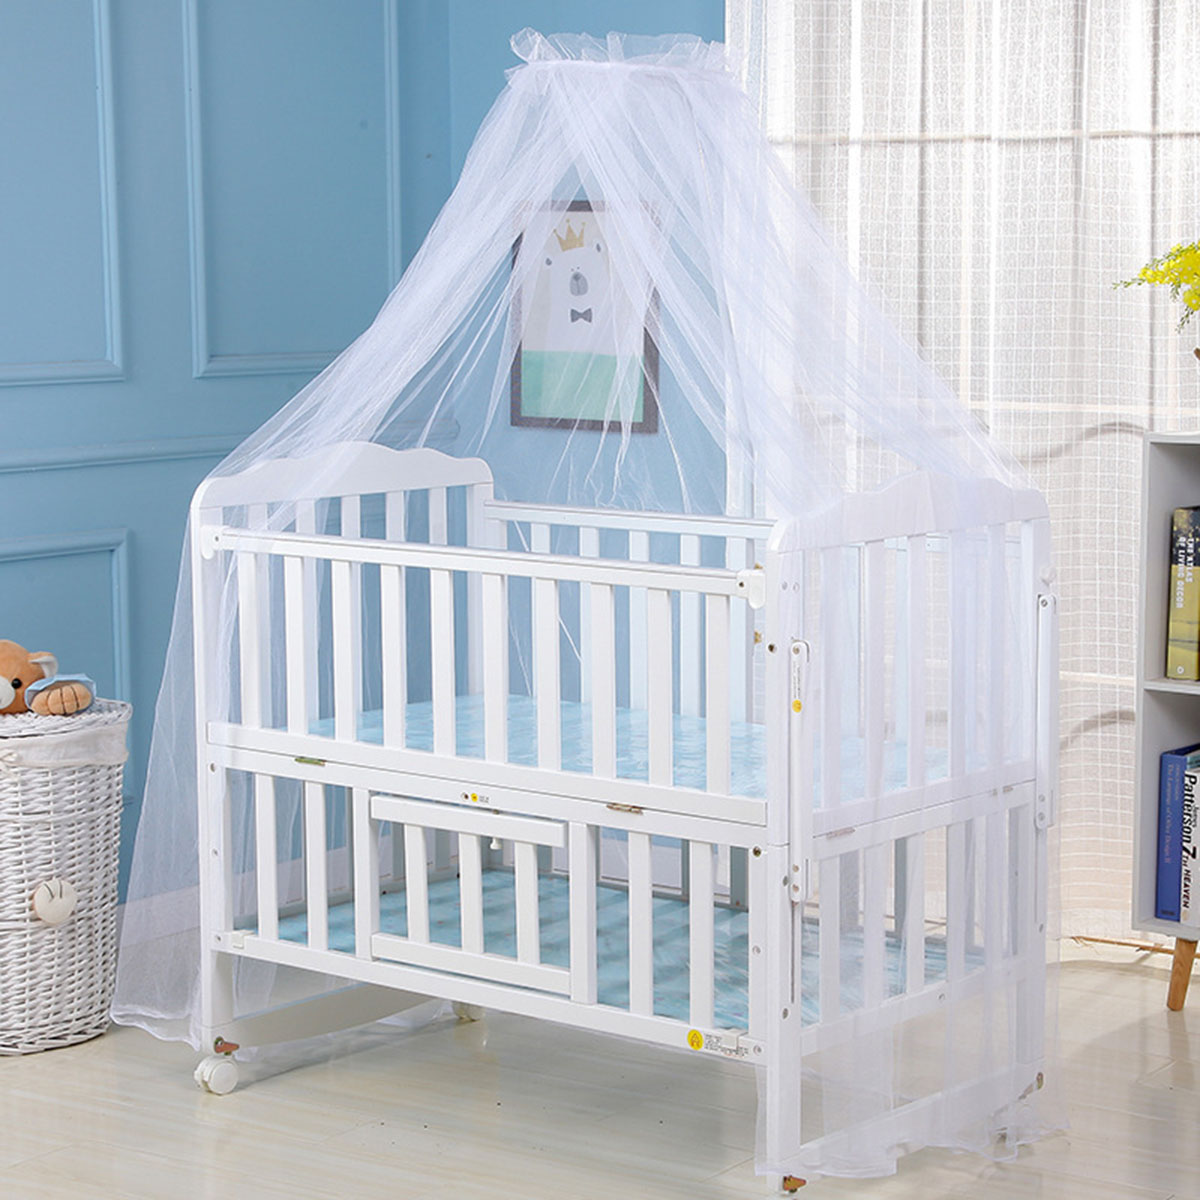 Myggenet baby seng myggenet mesh kuppel gardinet til småbørneseng barneseng baldakin blå hvid farve dropshipp: Sort